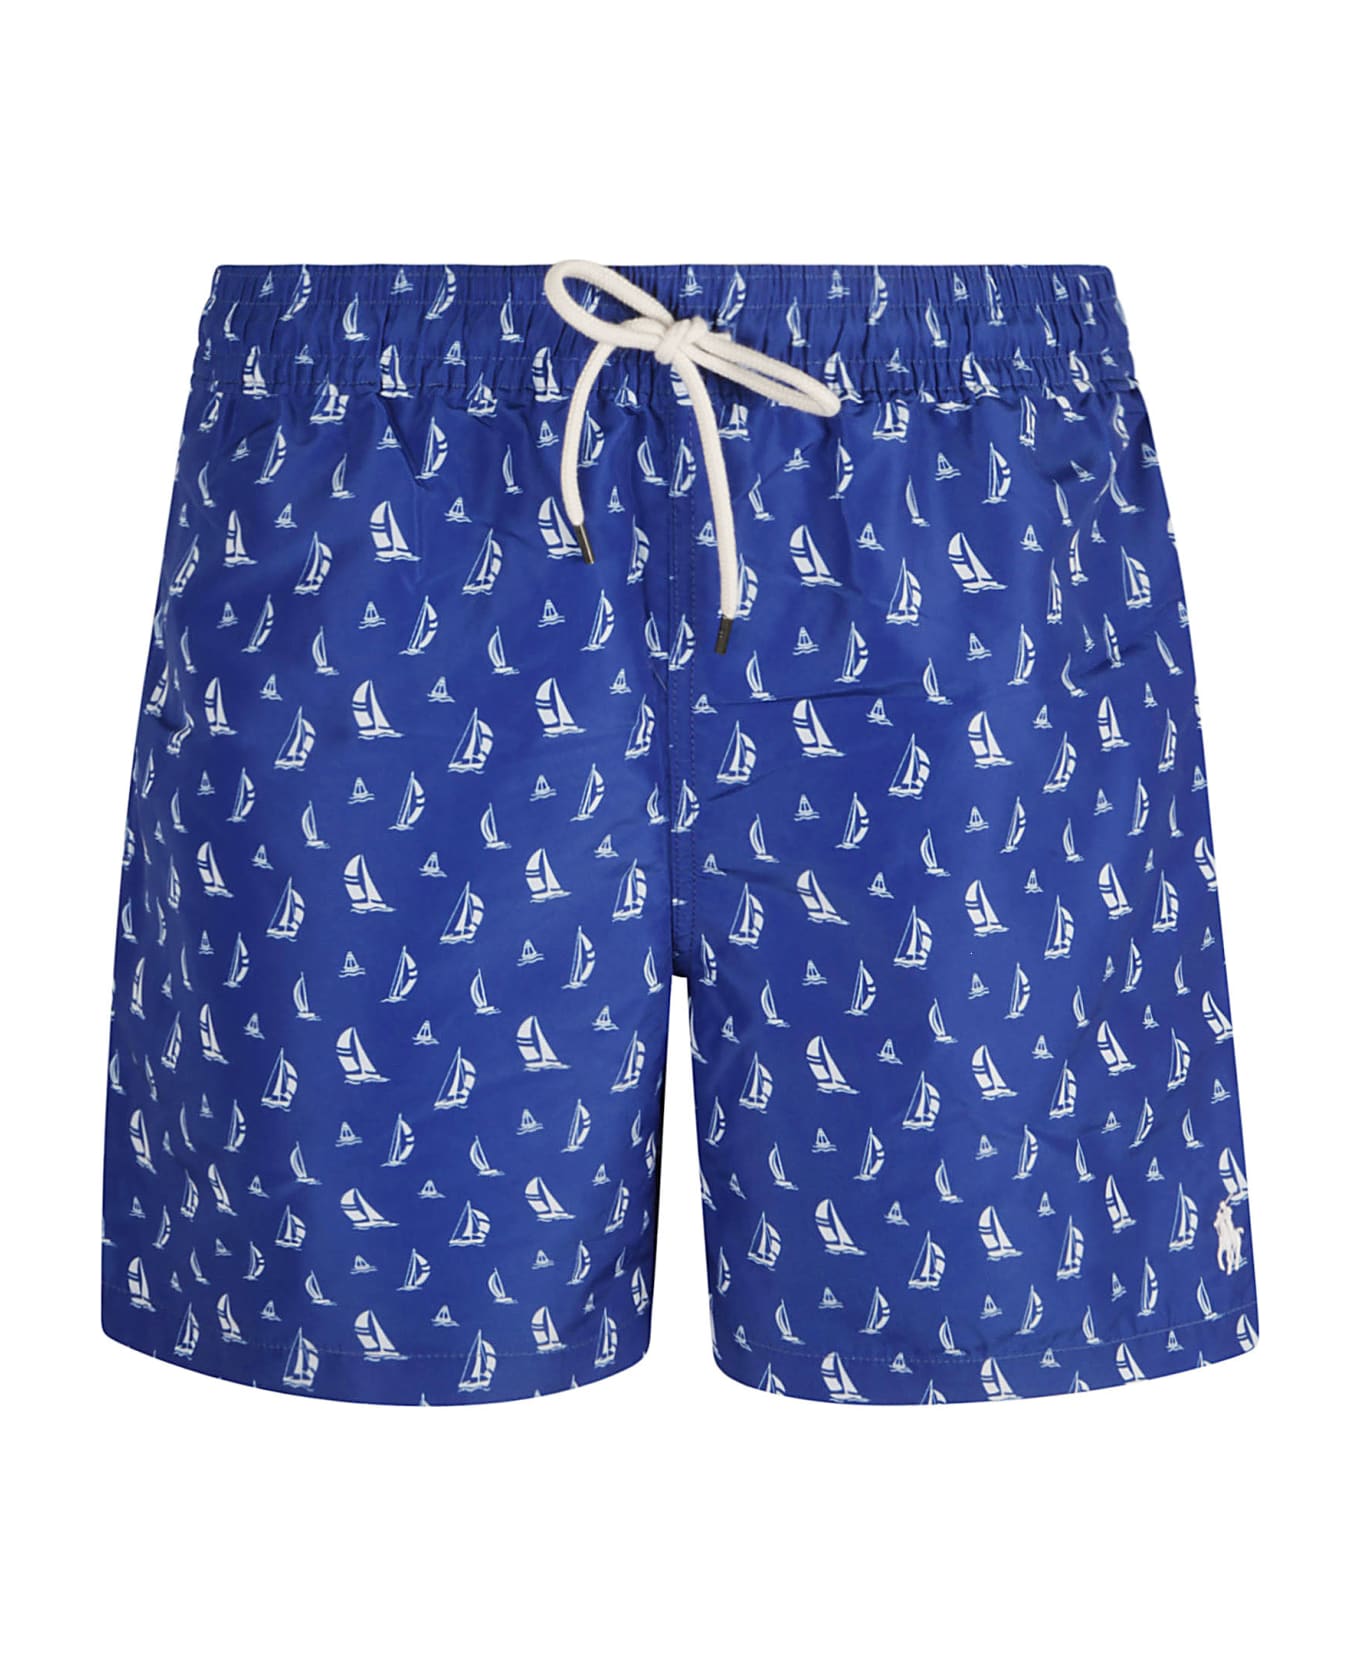 Ralph Lauren Sail Printed Shorts - Blue